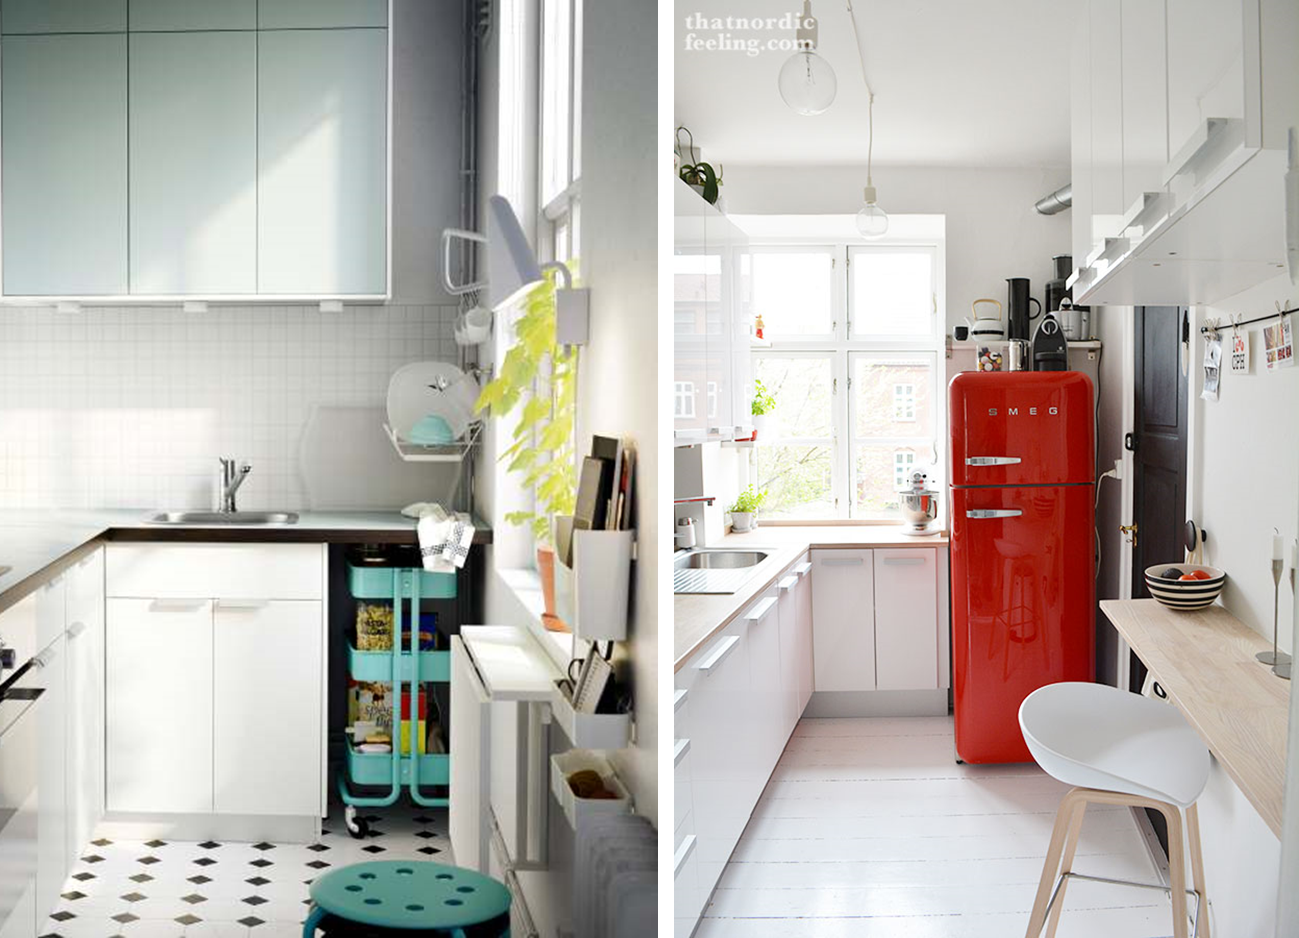 imagenes de muebles de cocina para espacios pequeos - imagenes de muebles para cocinas pequeñas